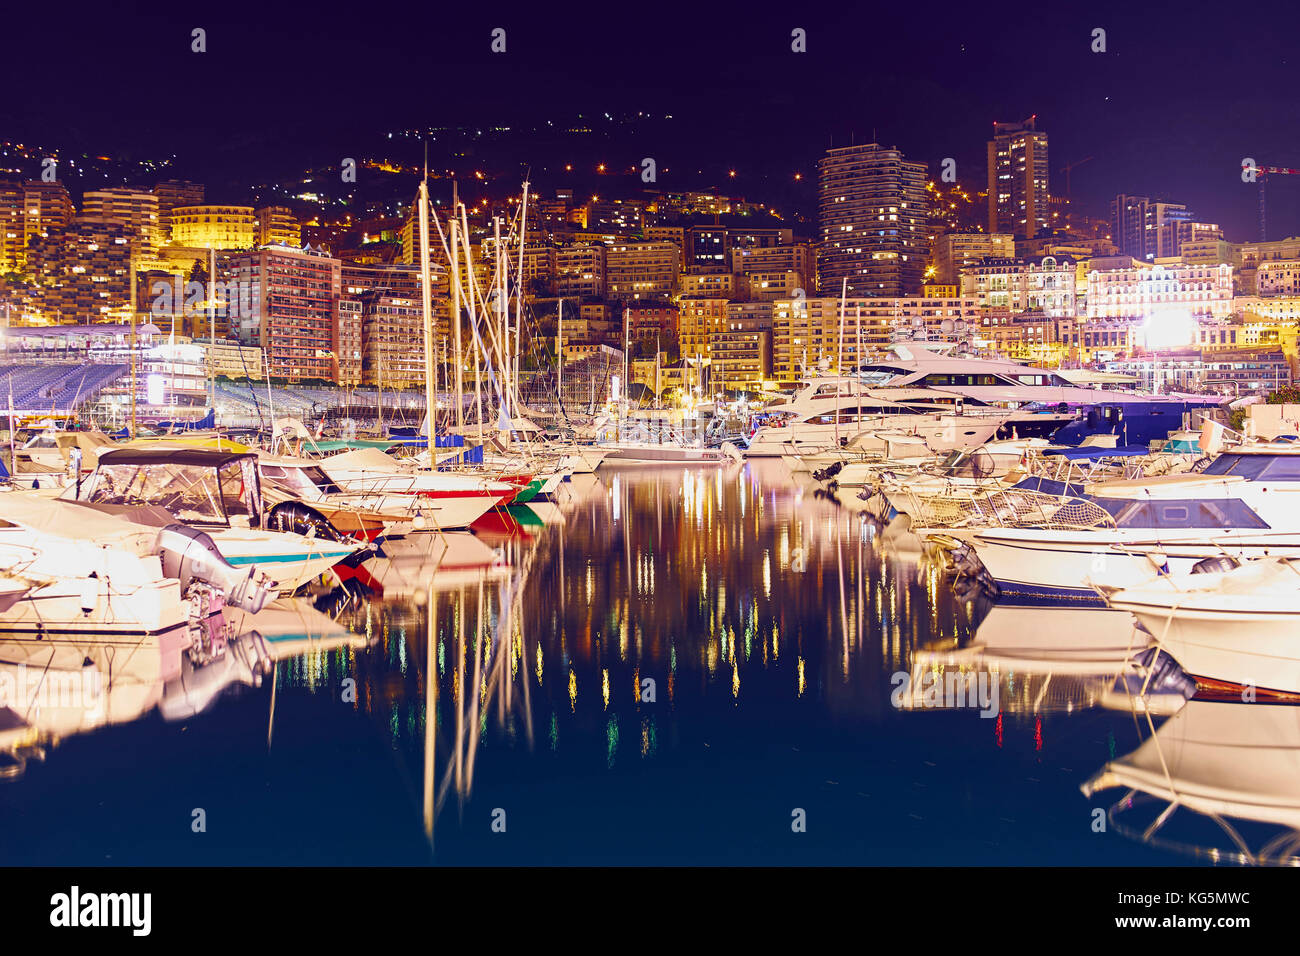 Montecarlo par nuit, Monaco, principauté de monaco, cote d'azur, sud de la France, l'Europe occidentale, Europe Banque D'Images